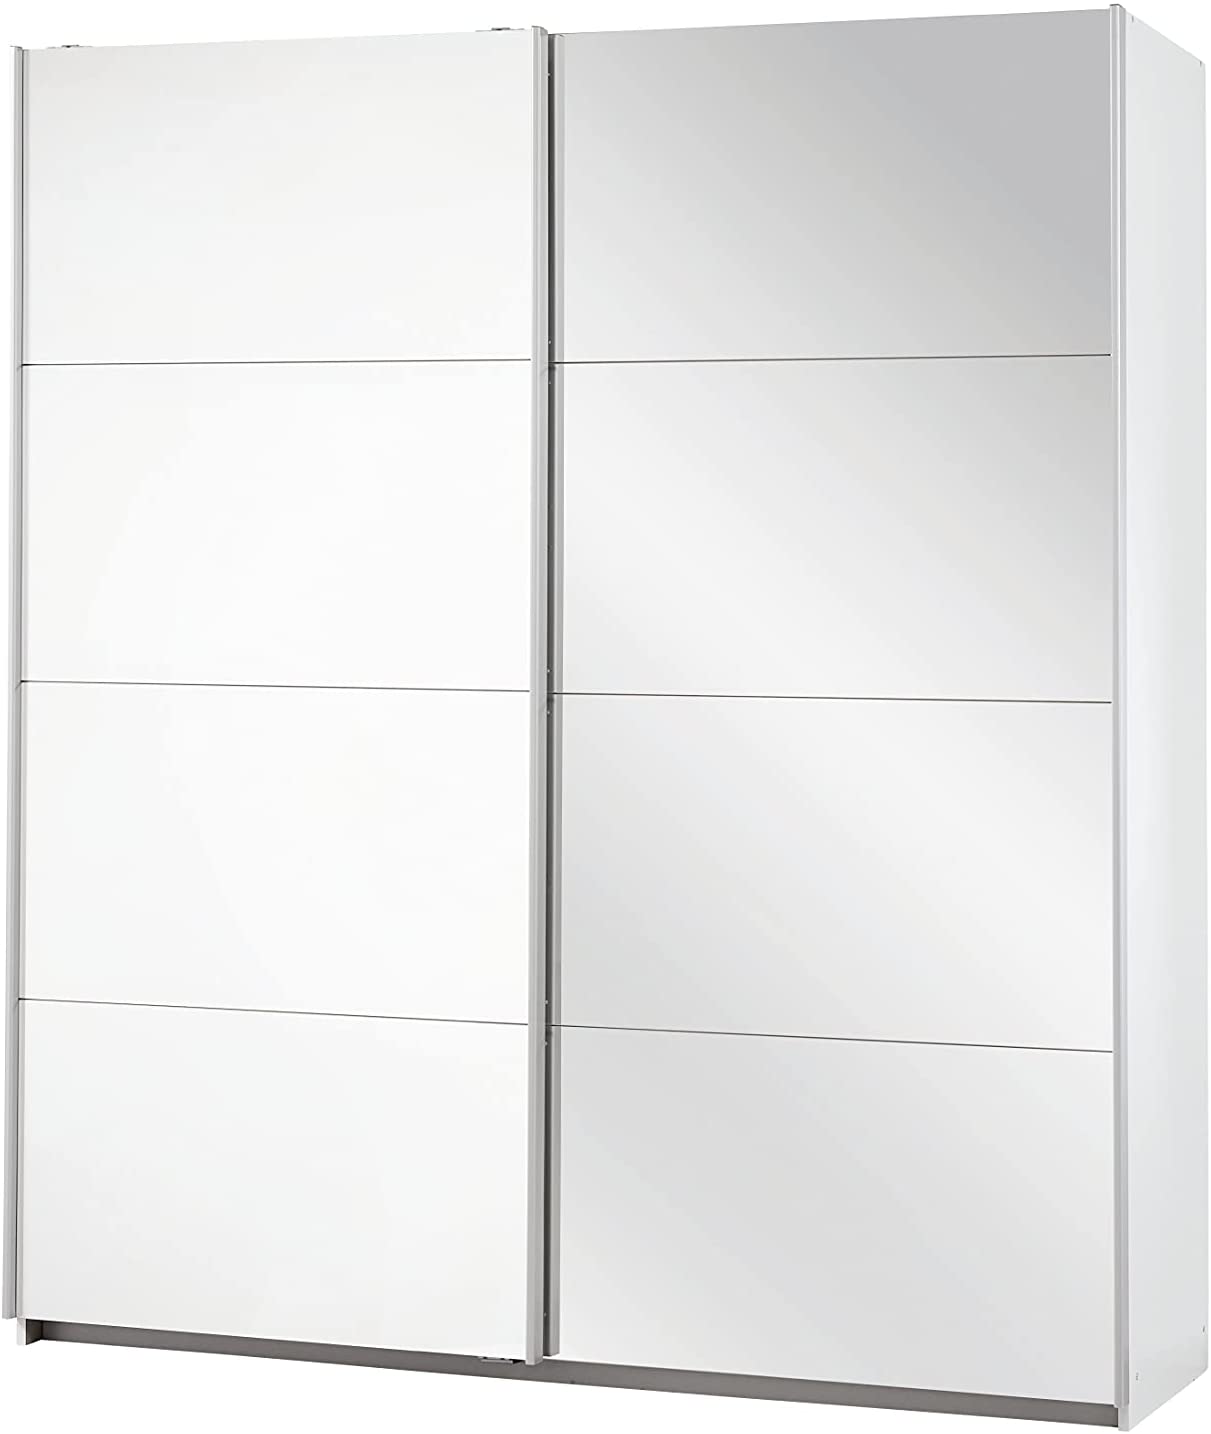 Spiegel Schrank Kleiderschrank Schwebetürenschrank Weiß mit Spiegel 2-türig, 2 Kleiderstangen, Hakenleiste, Türdämpfer, BxHxT 181x210x62 cm